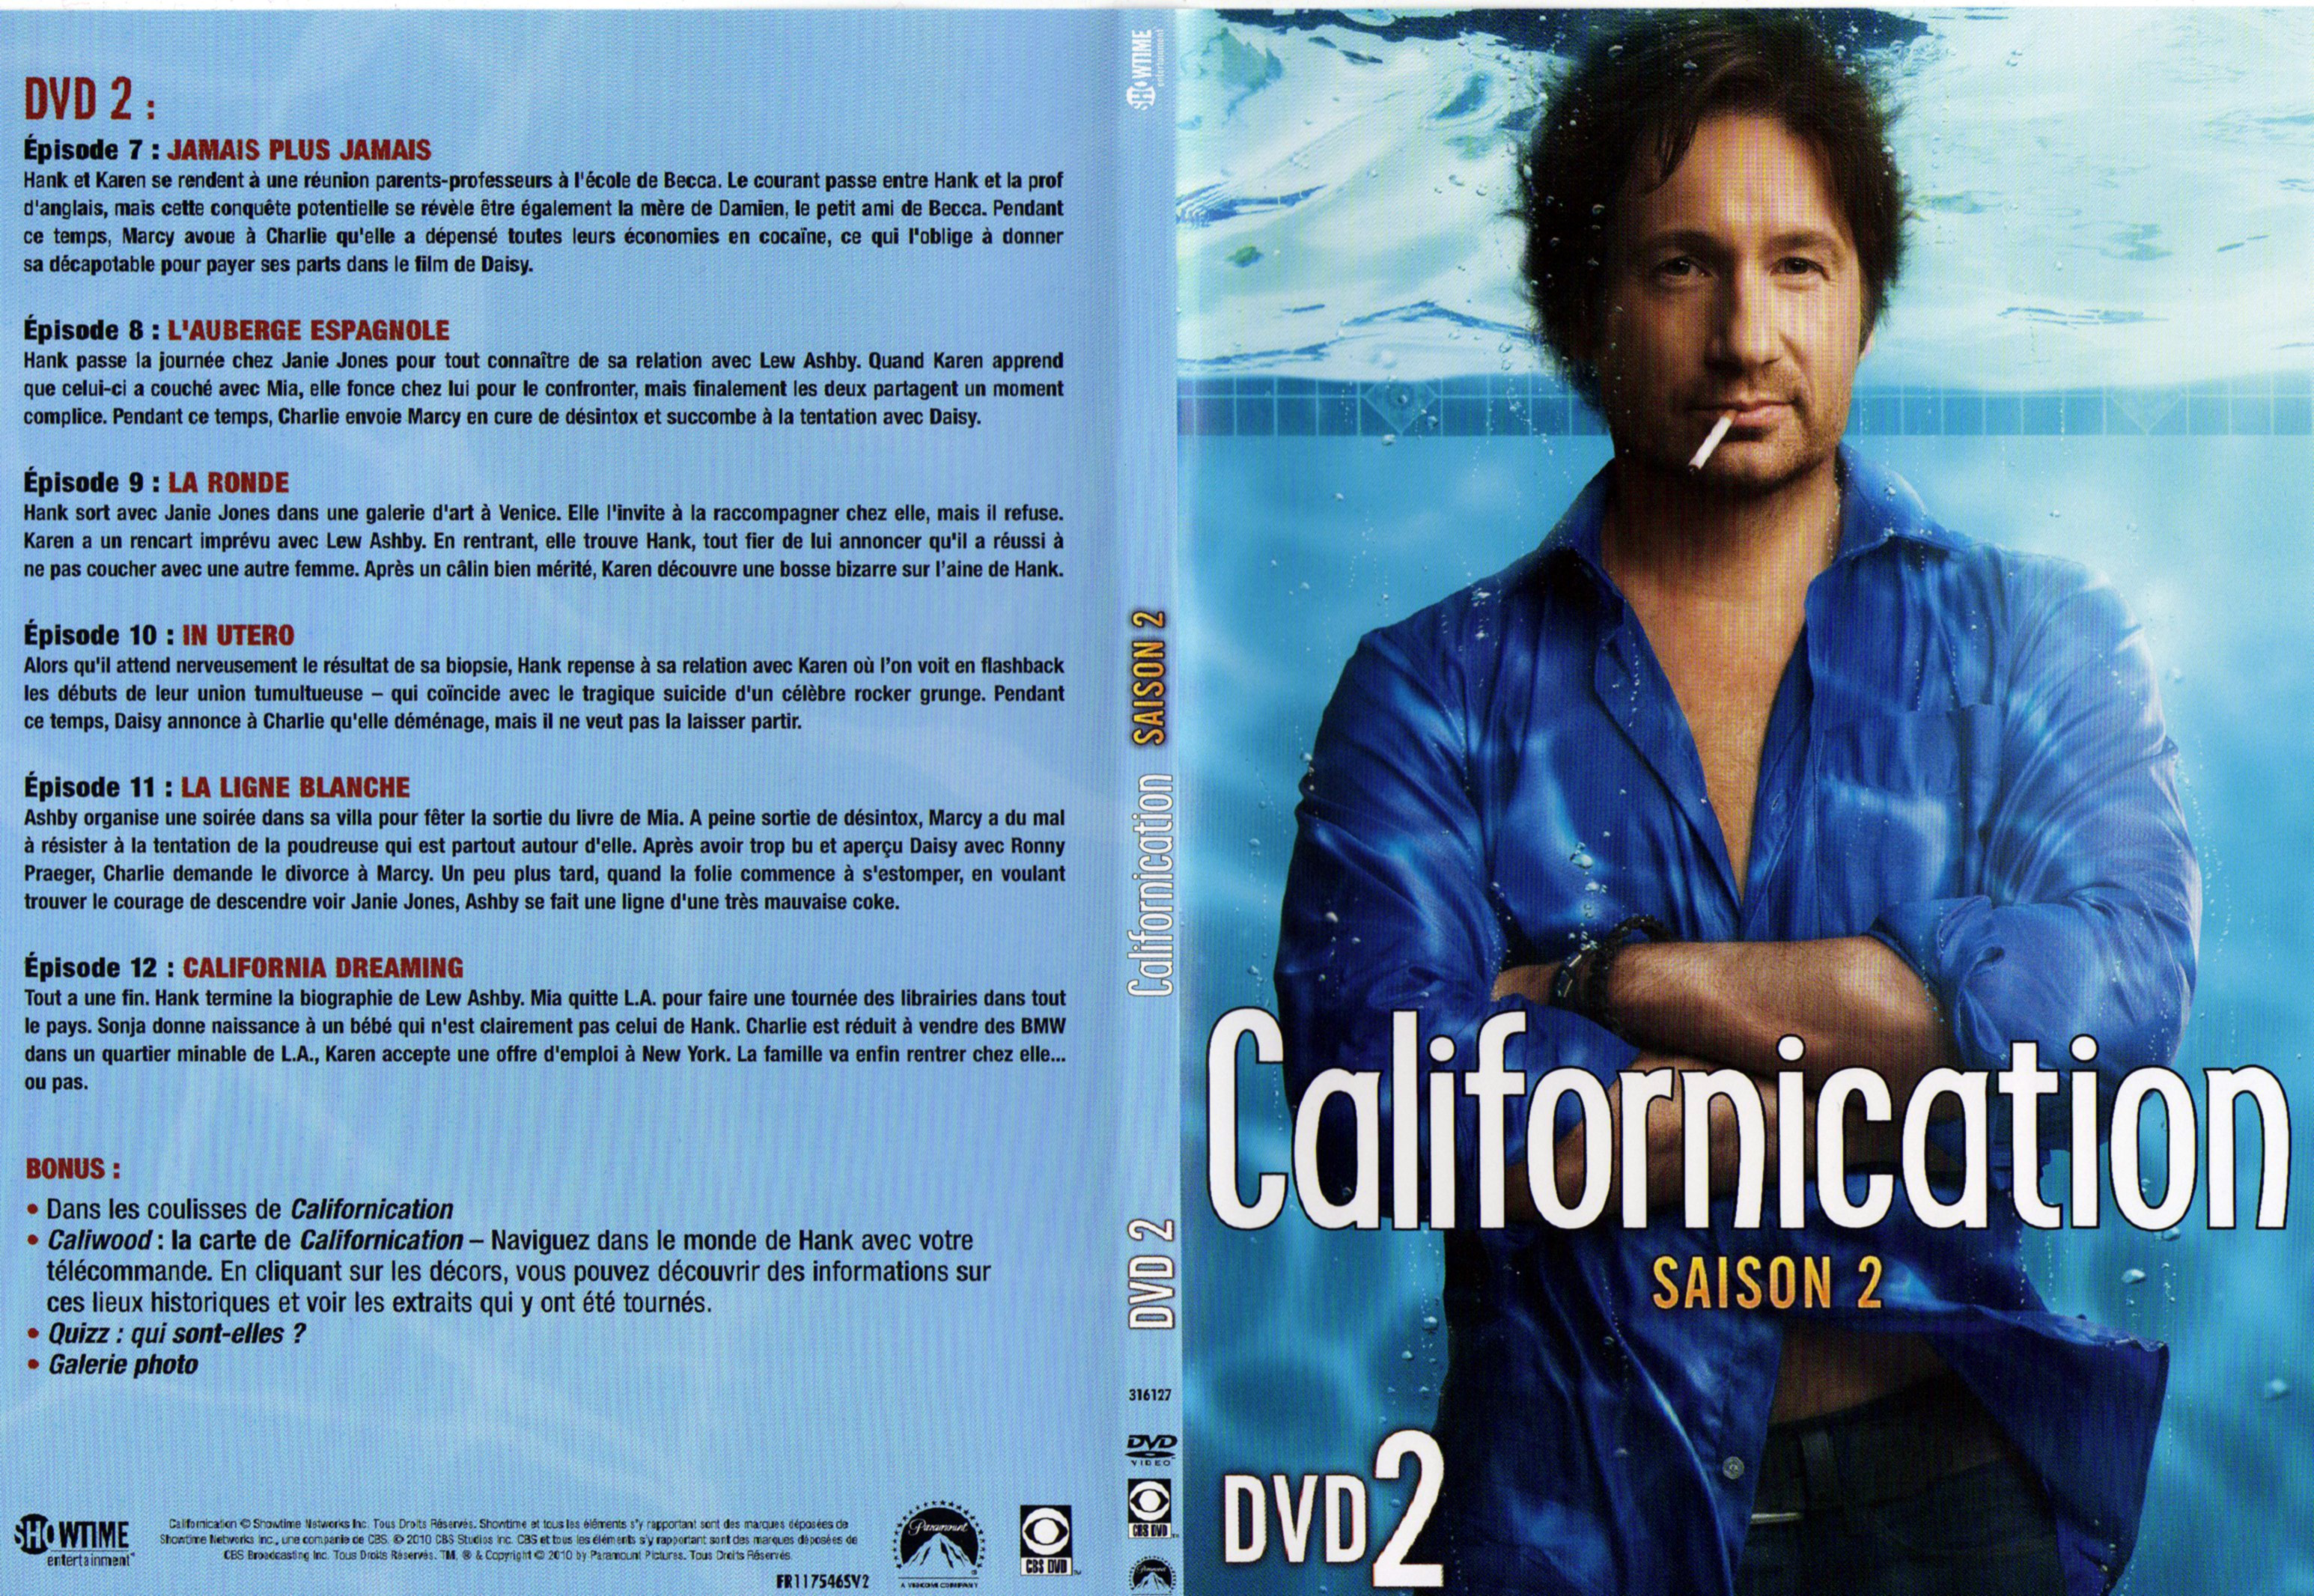 Jaquette DVD Californication Saison 2 DVD 2